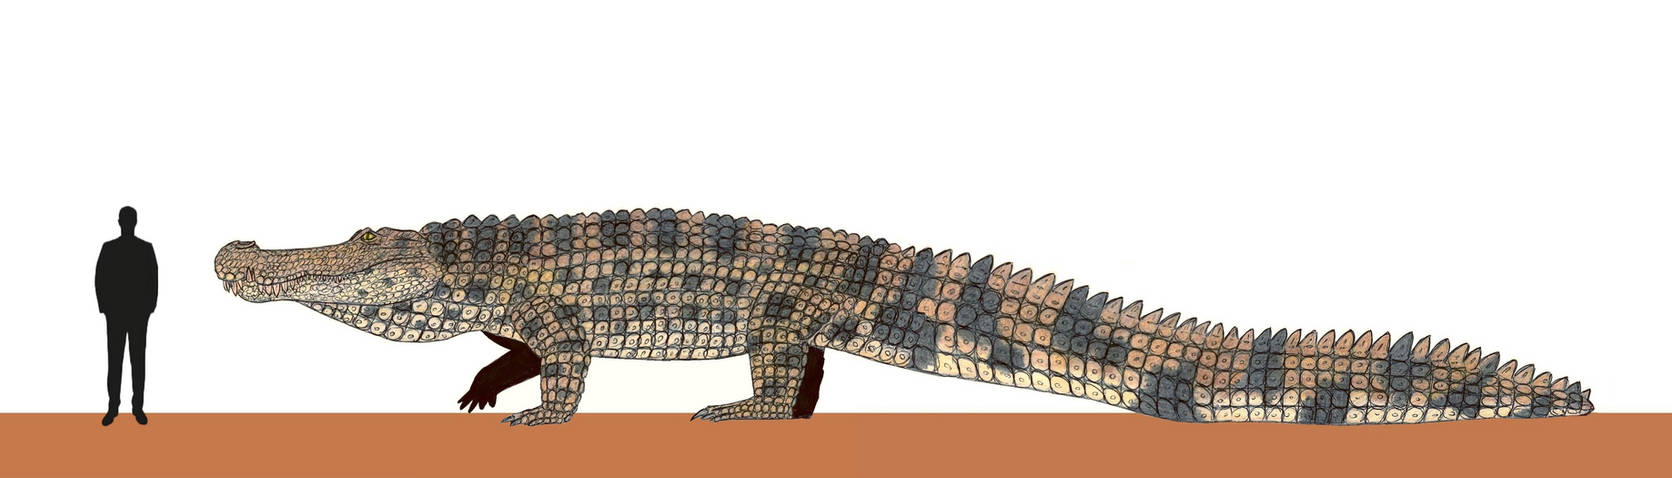 March of the Dinosaurs: Deinosuchus hatcheri